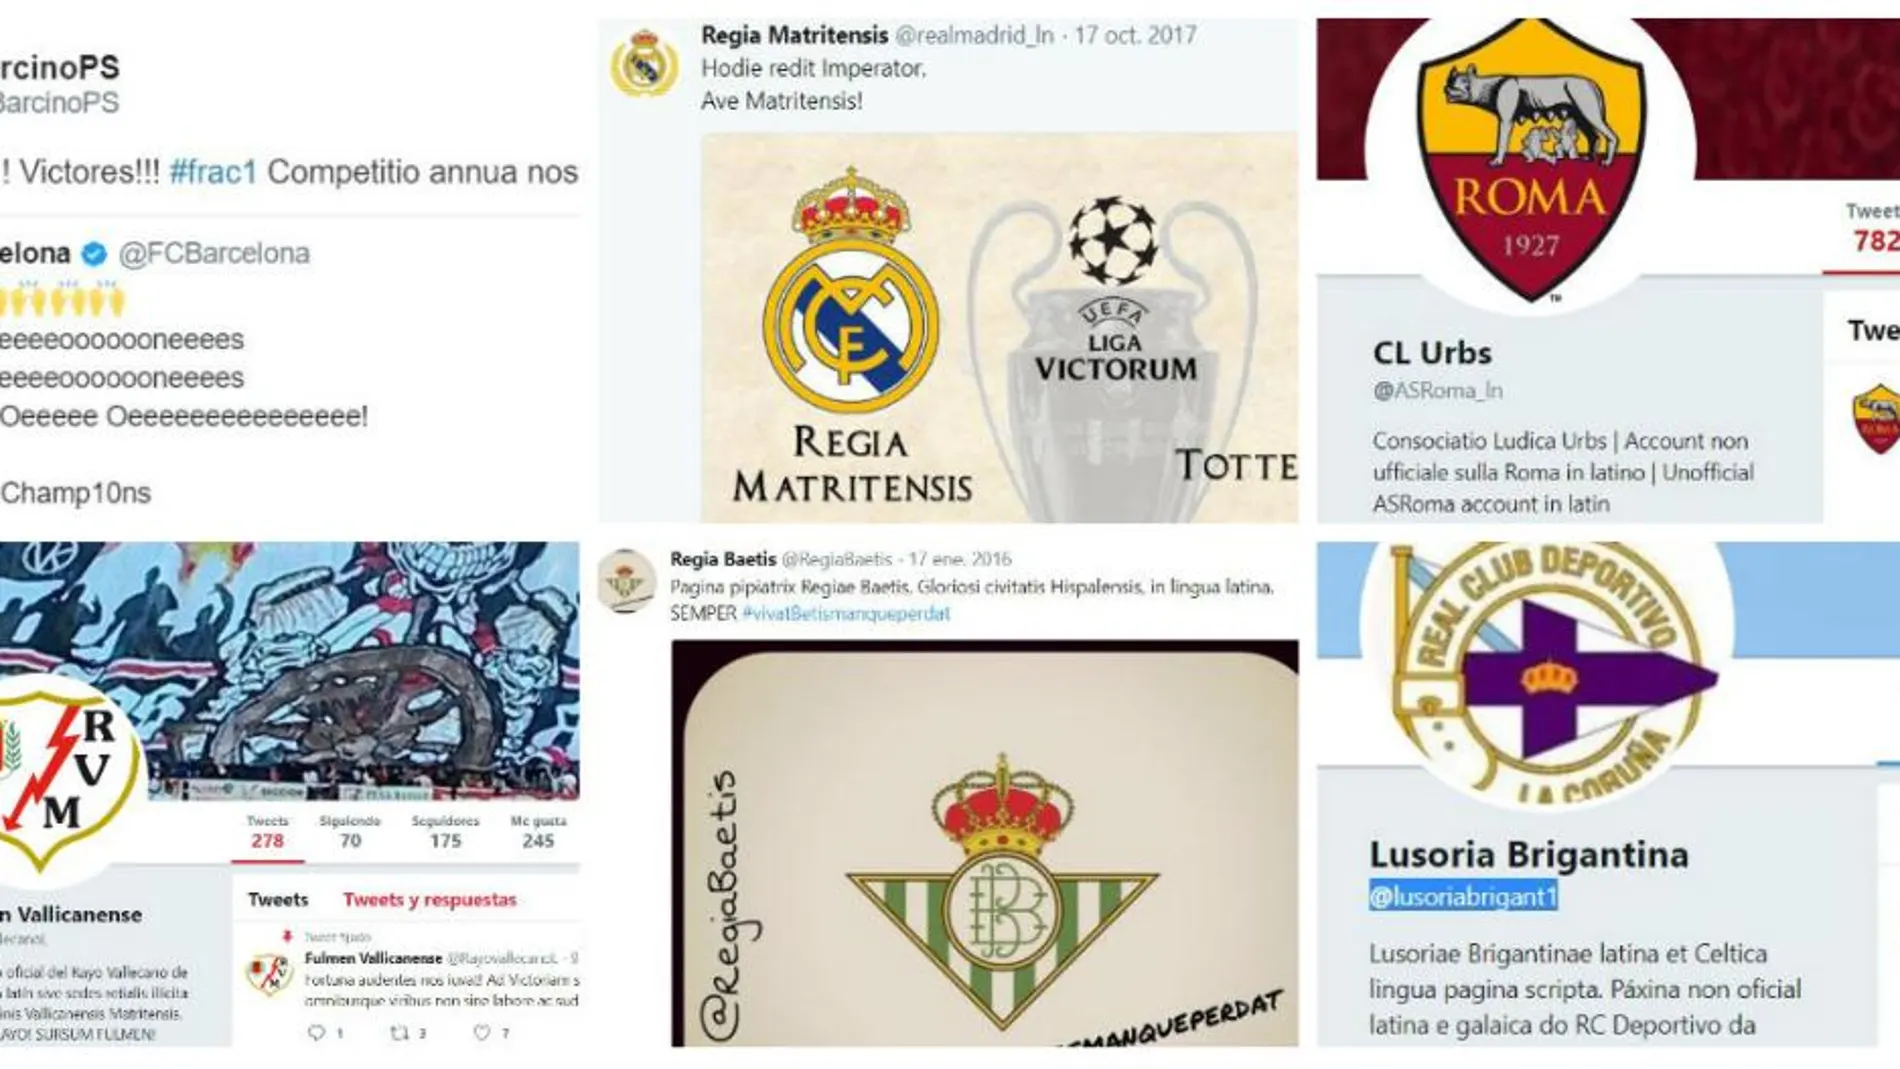 Clubes españoles y europeos ya cuentan con perfiles en Twitter.